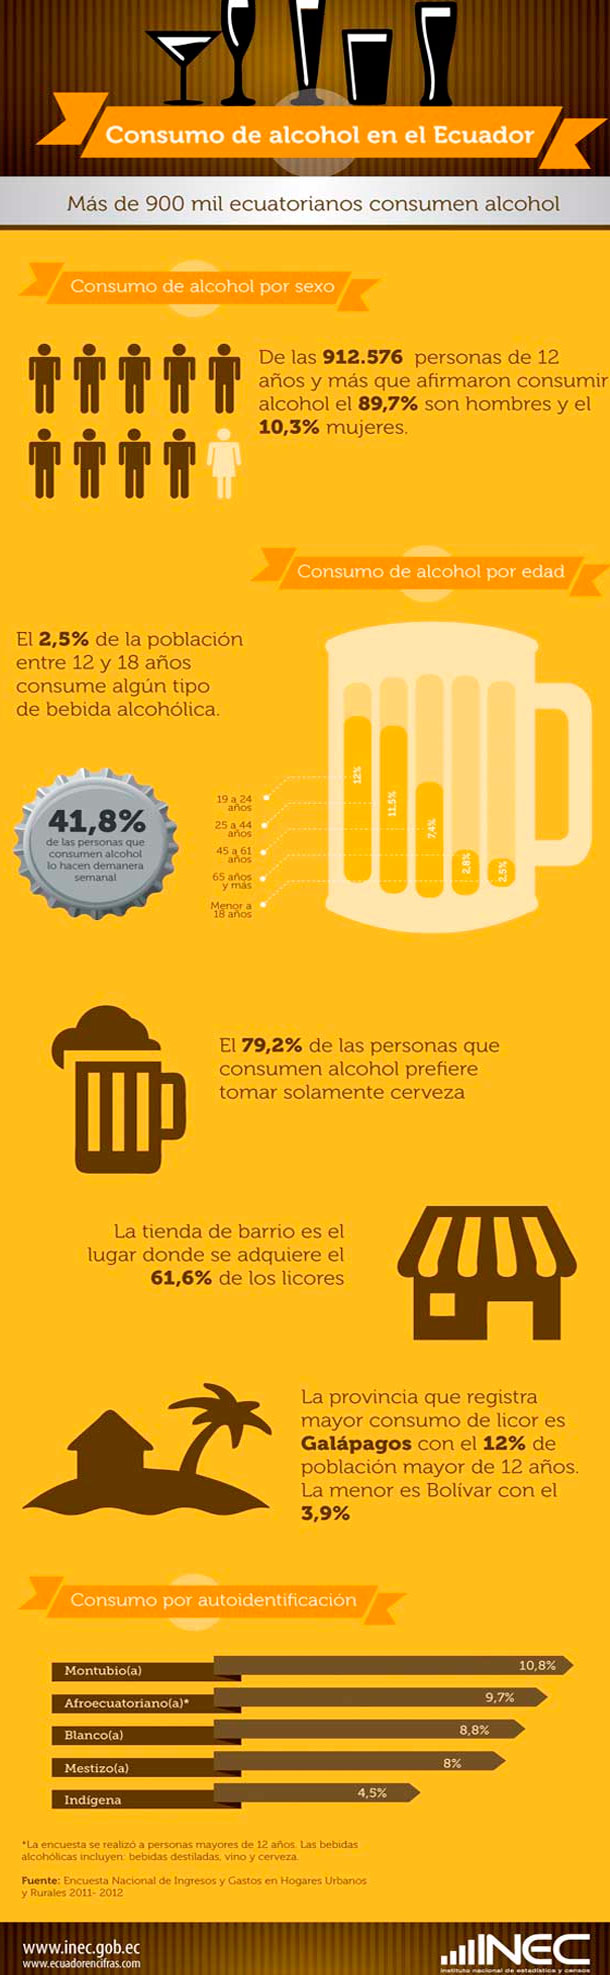 Mas_de_900_mil_ecuatorianos_consumen_alcoholt